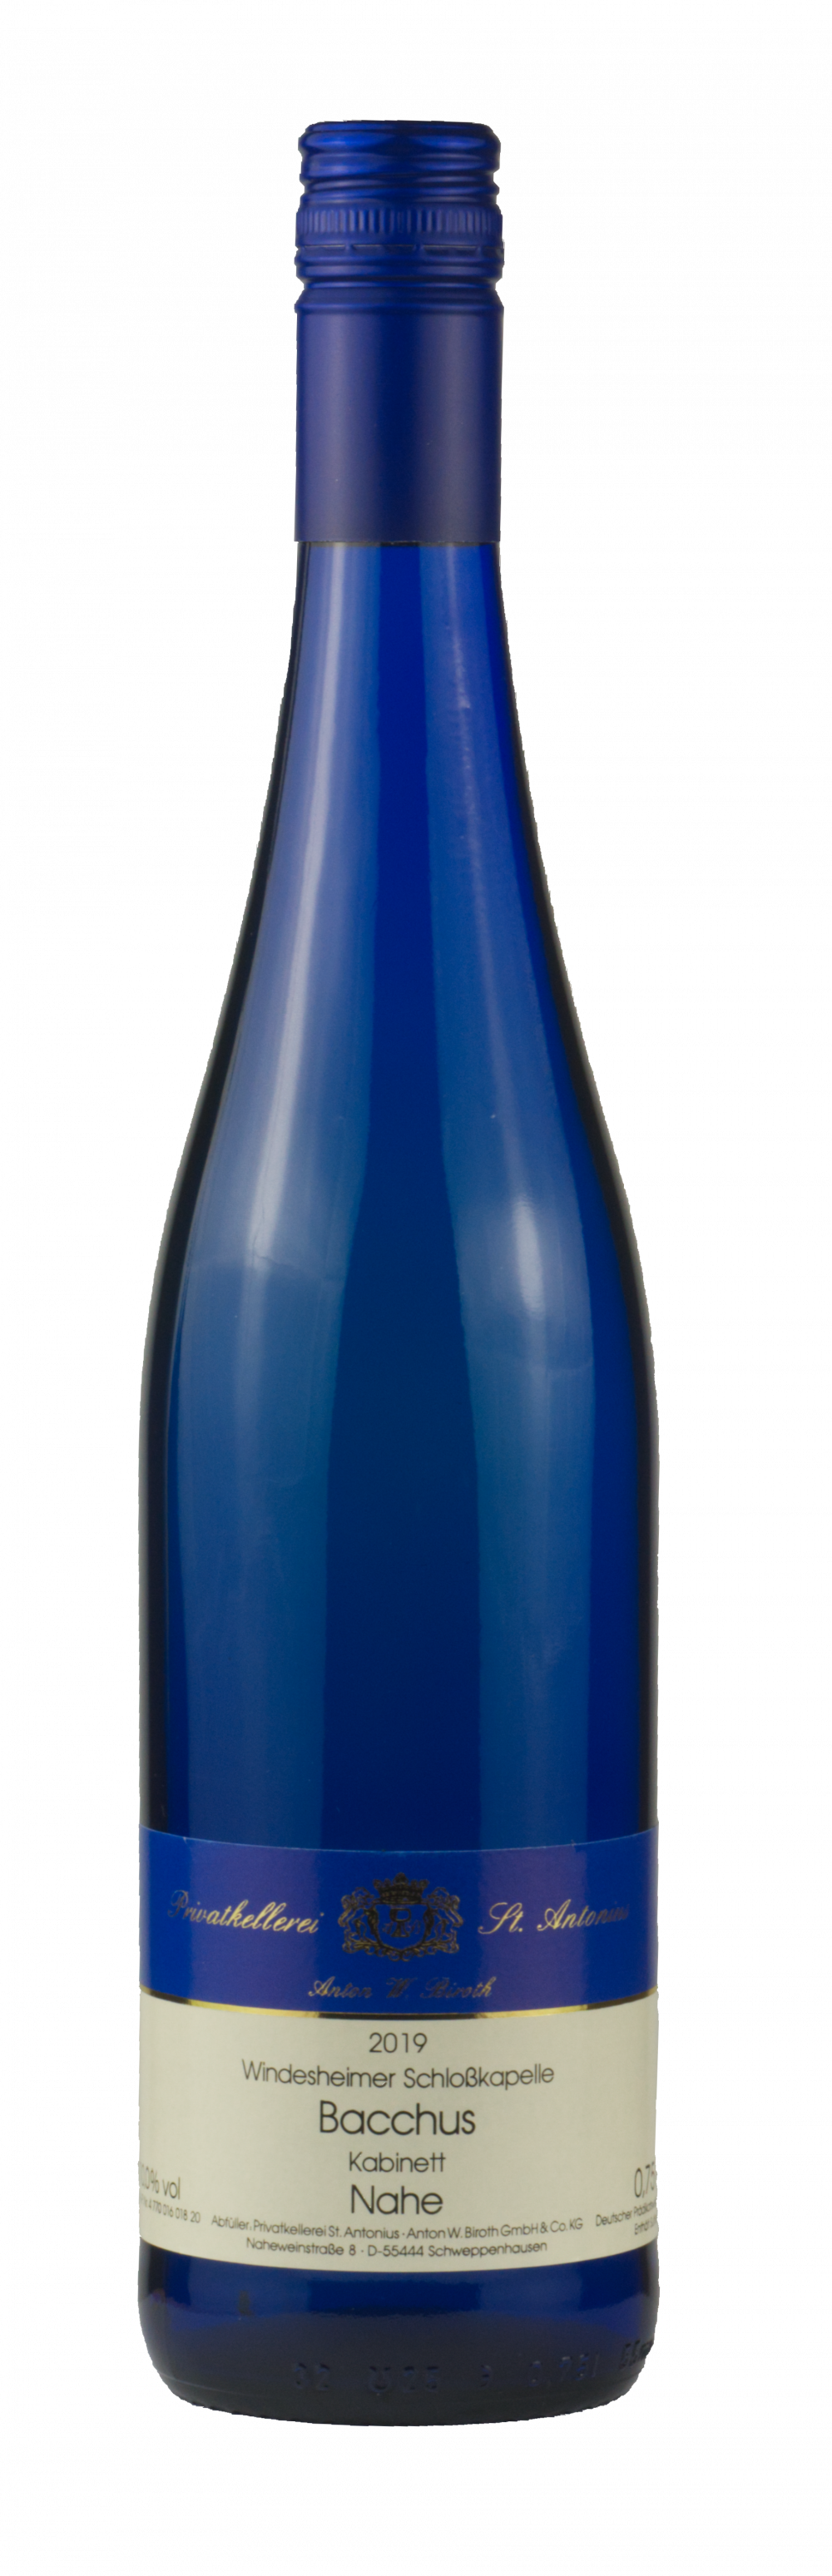 Windesheimer Schlosskapelle Bacchus Kabinett 2019 (Blue bottle)